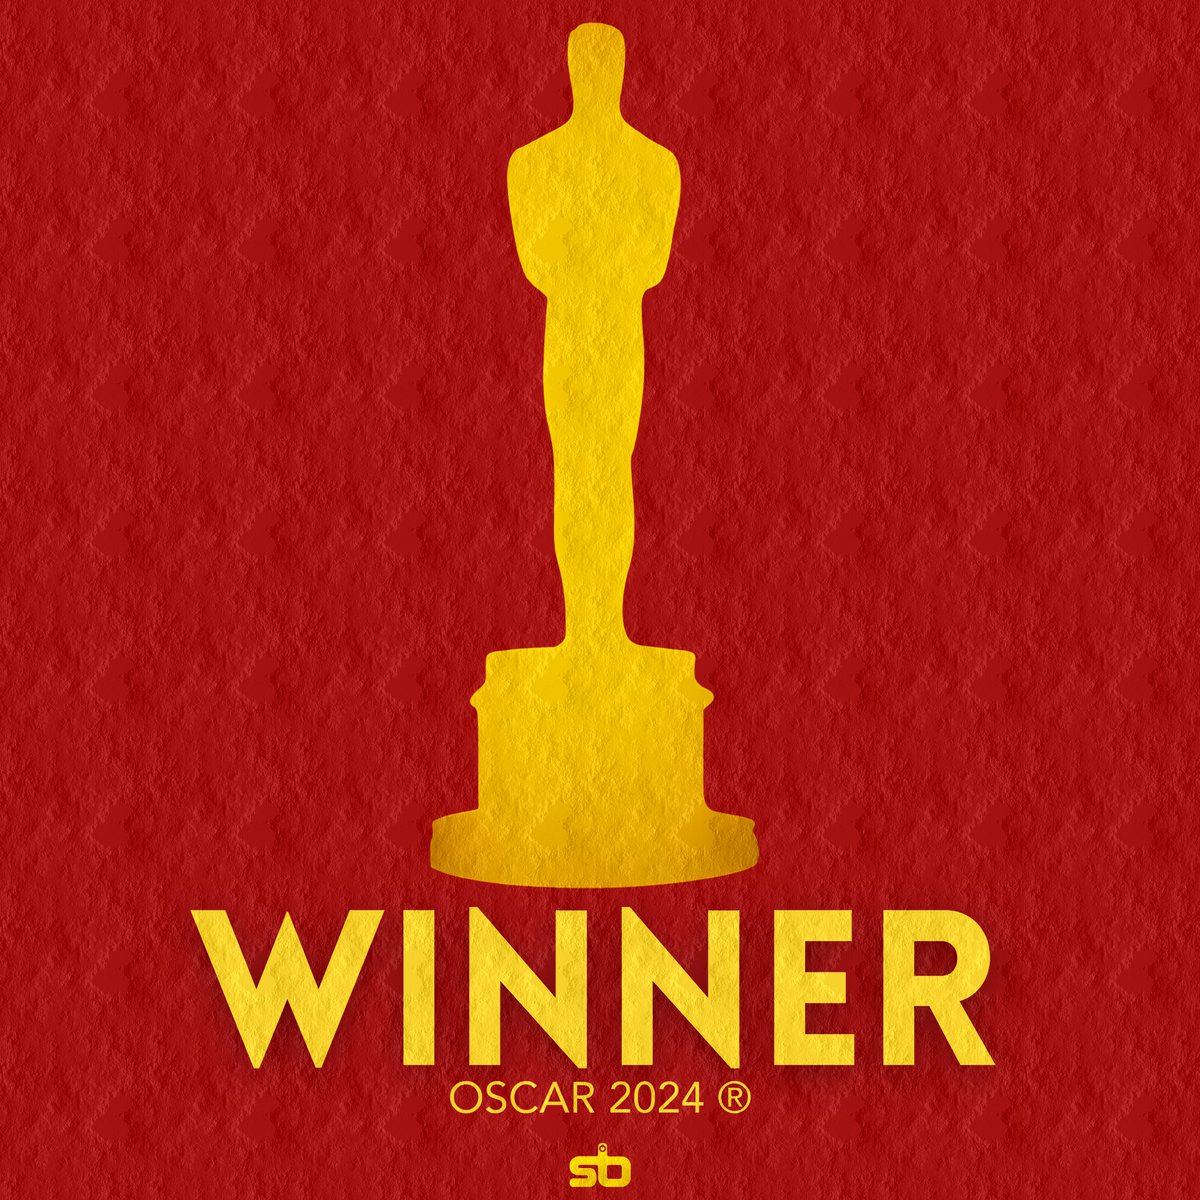 🏆 O MENINO E A GARÇA (The Boy and the Heron) vence o Oscar de “Melhor Filme de Animação”. #Oscars #Oscars2024